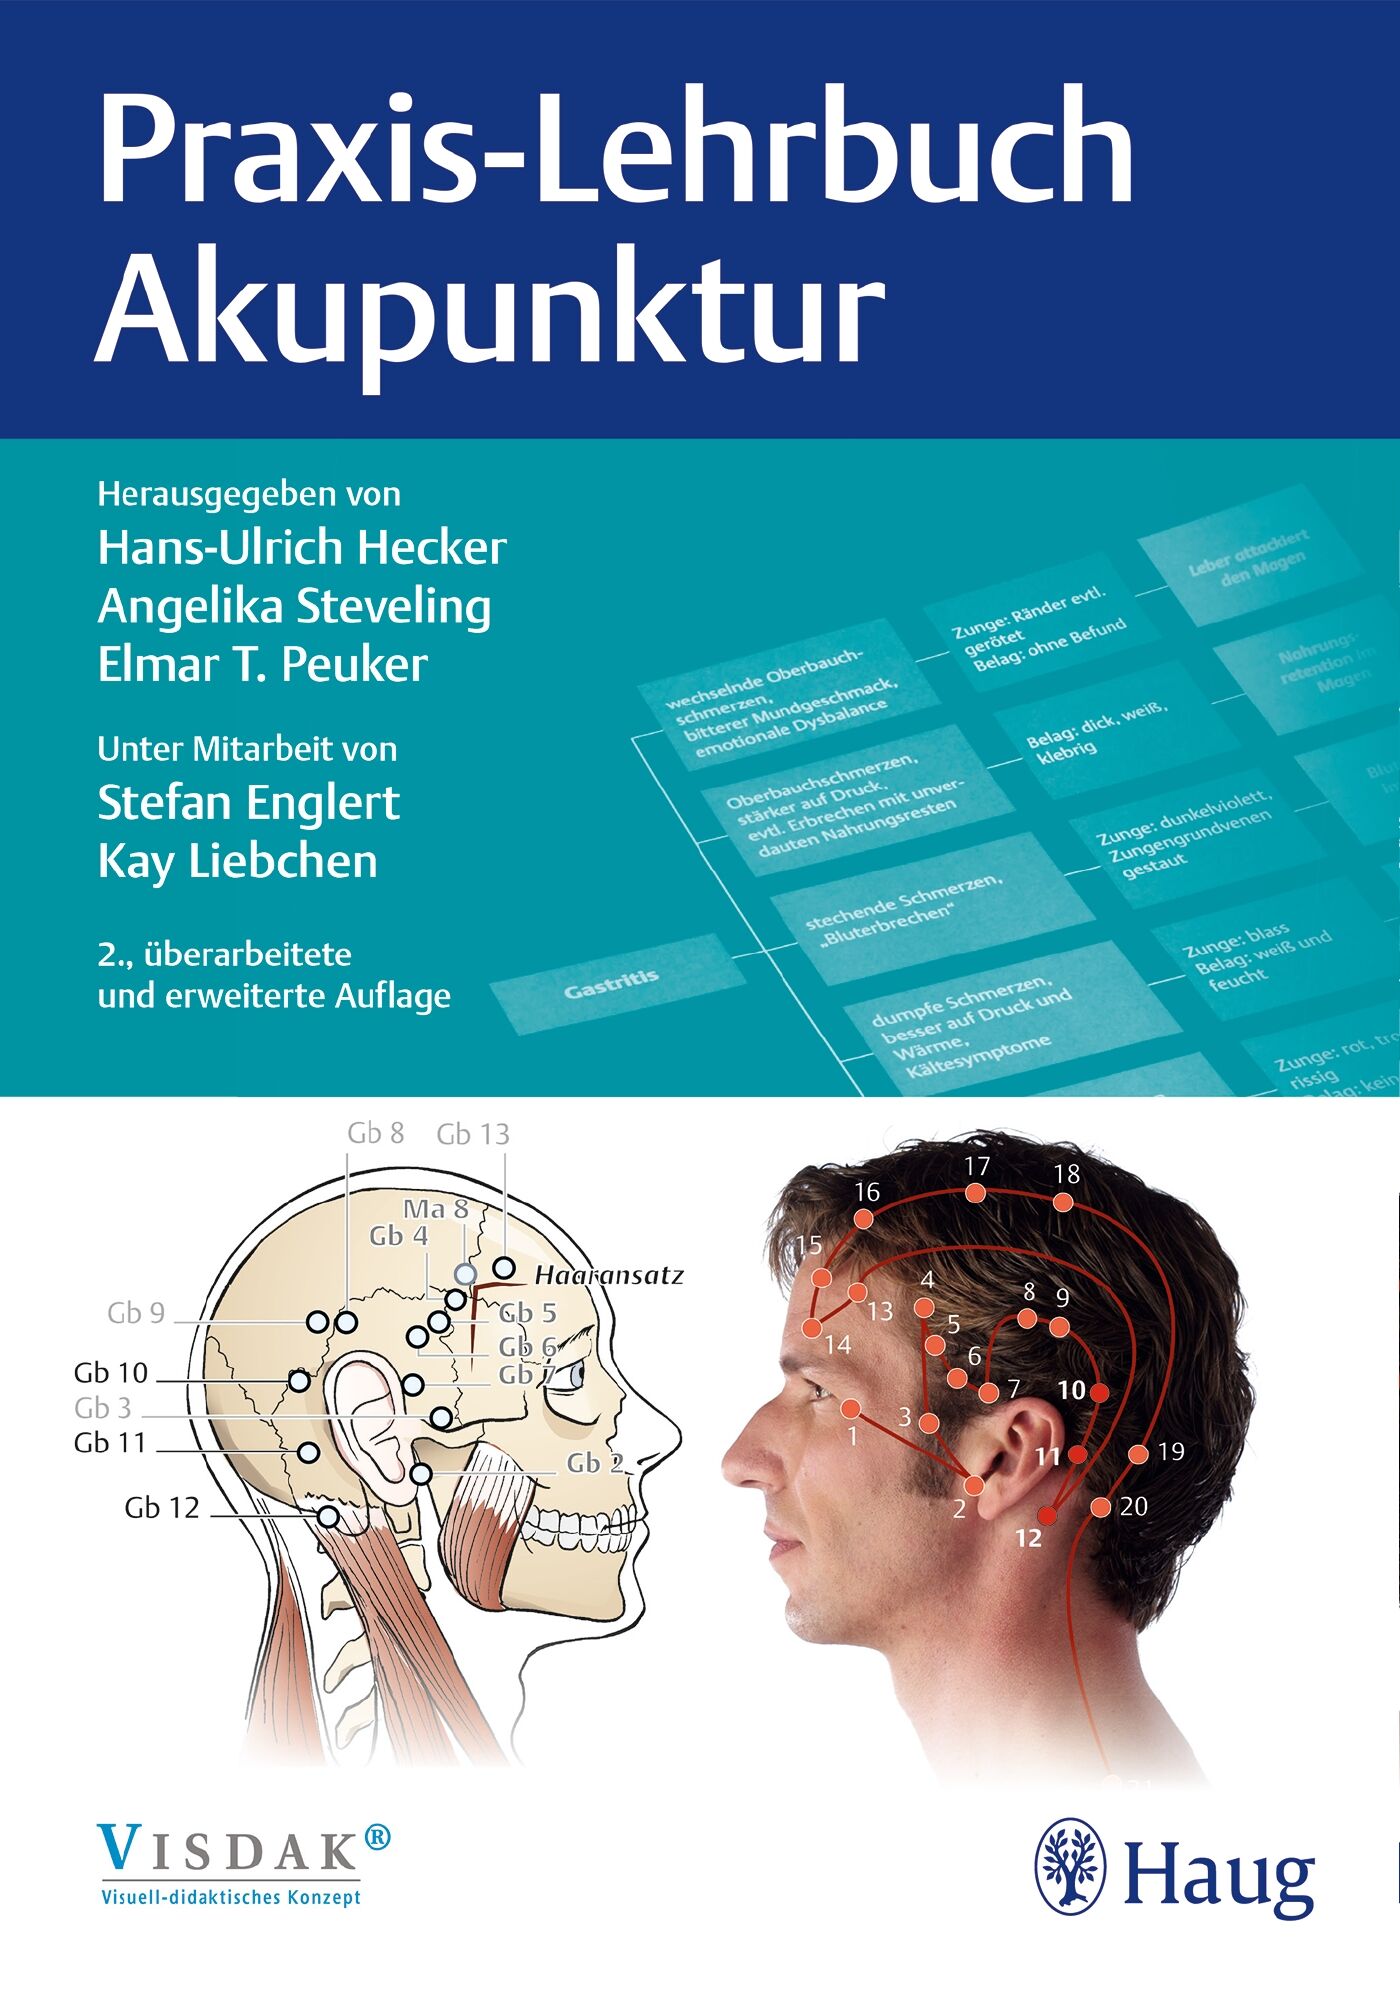 Praxis-Lehrbuch Akupunktur, 9783132400269